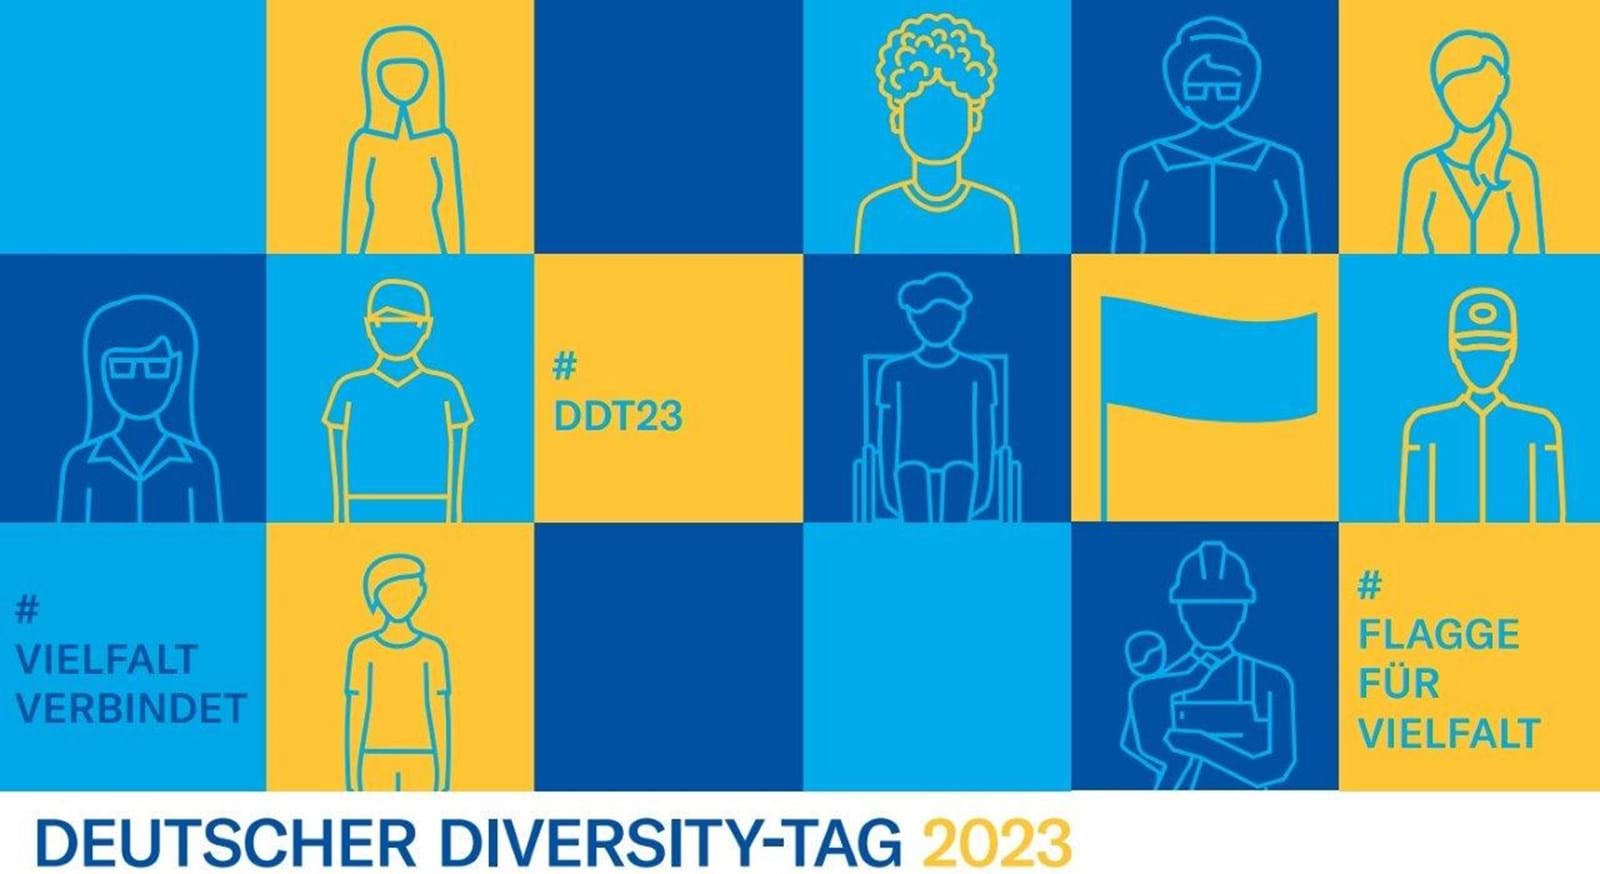 Deutscher Diversity Tag 2023 #VIELFALT VERBINDET #FLAGGE FÜR VIELFALT